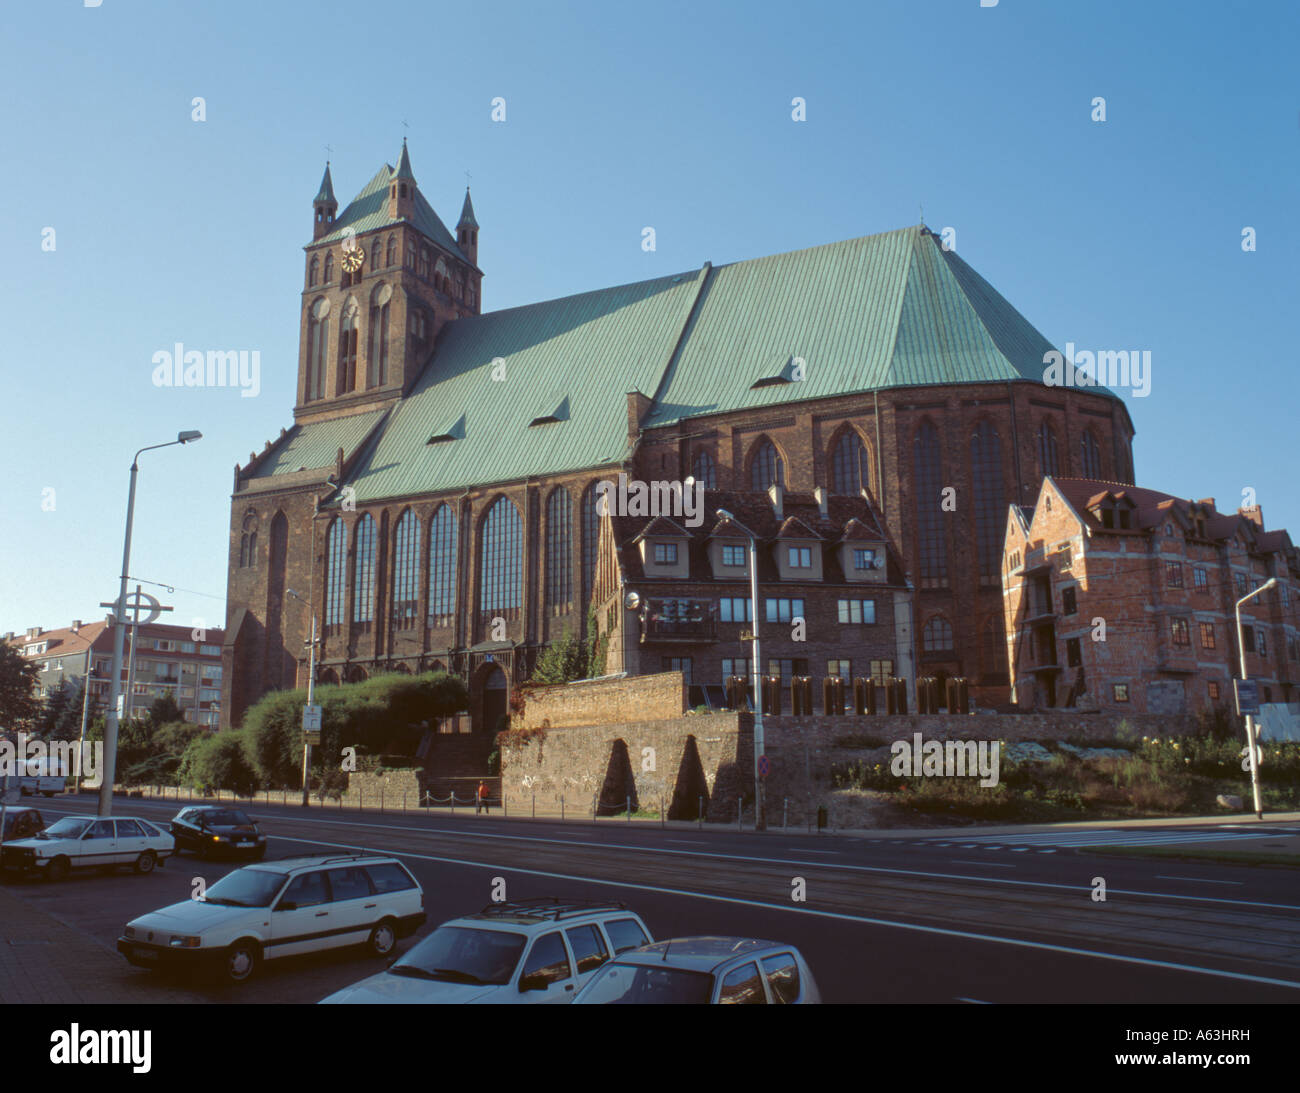 Katedra sw. Jakuba ( St Jacob's Cathedral ), Szczecin ( Stettin ), Western Pomerania, Poland. Stock Photo